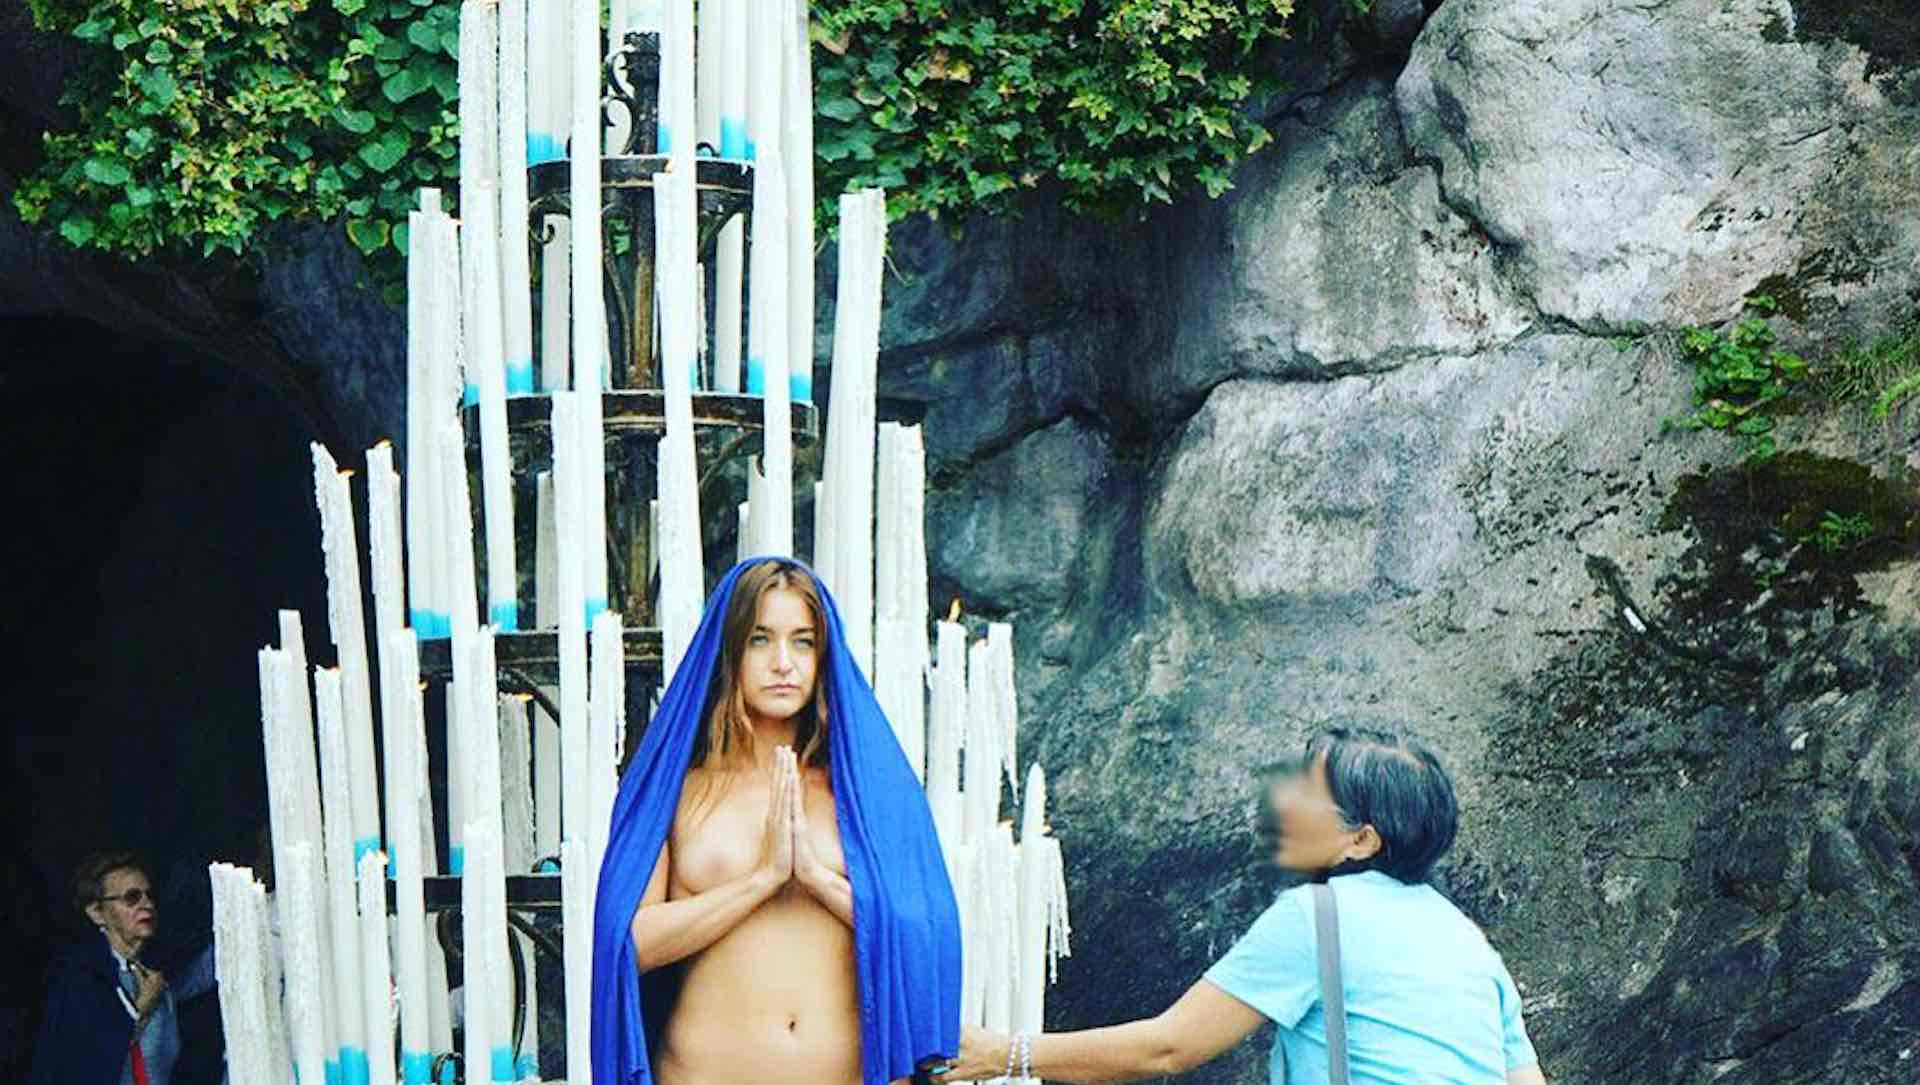 Una artista será juzgada por desnudarse en el santuario de Lourdes en Francia